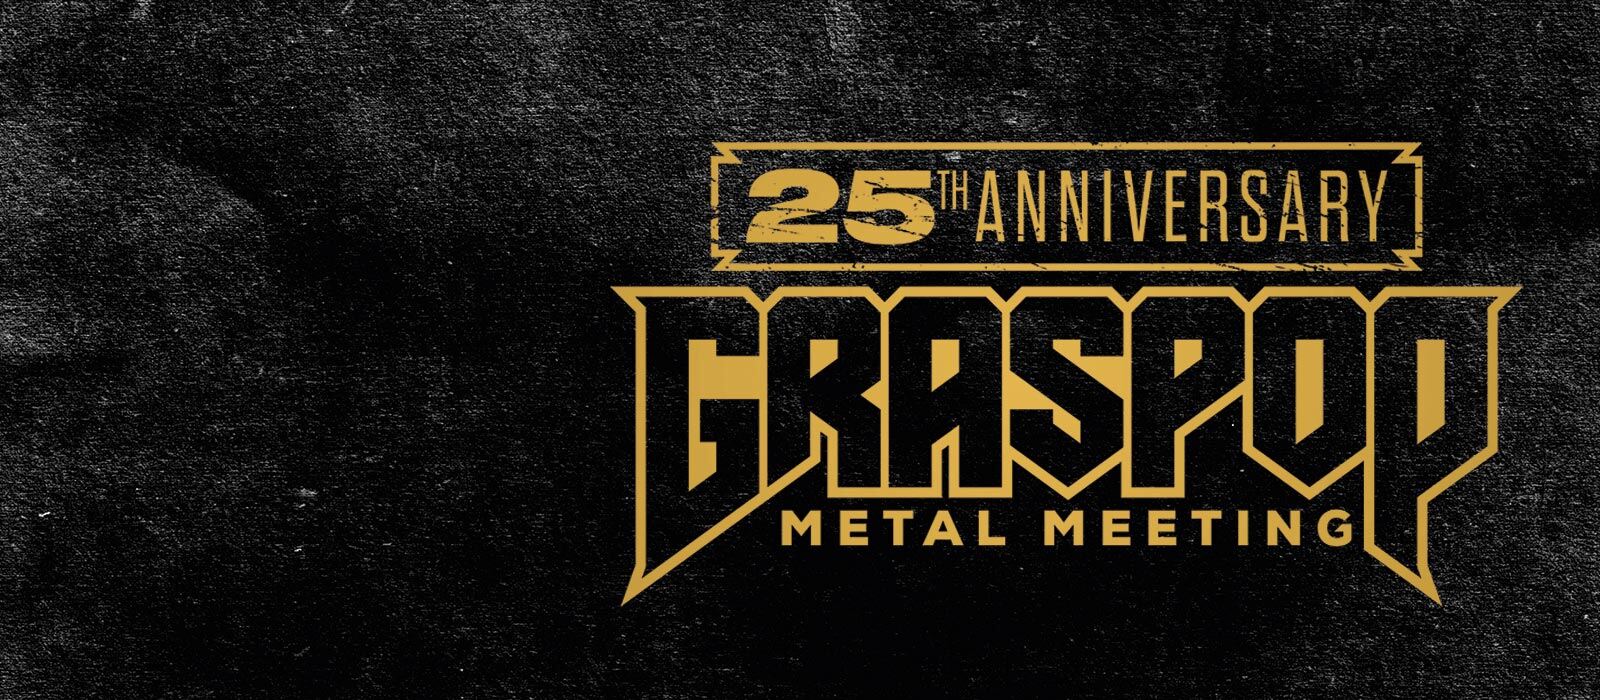 Graspop Metal Meeting 2022